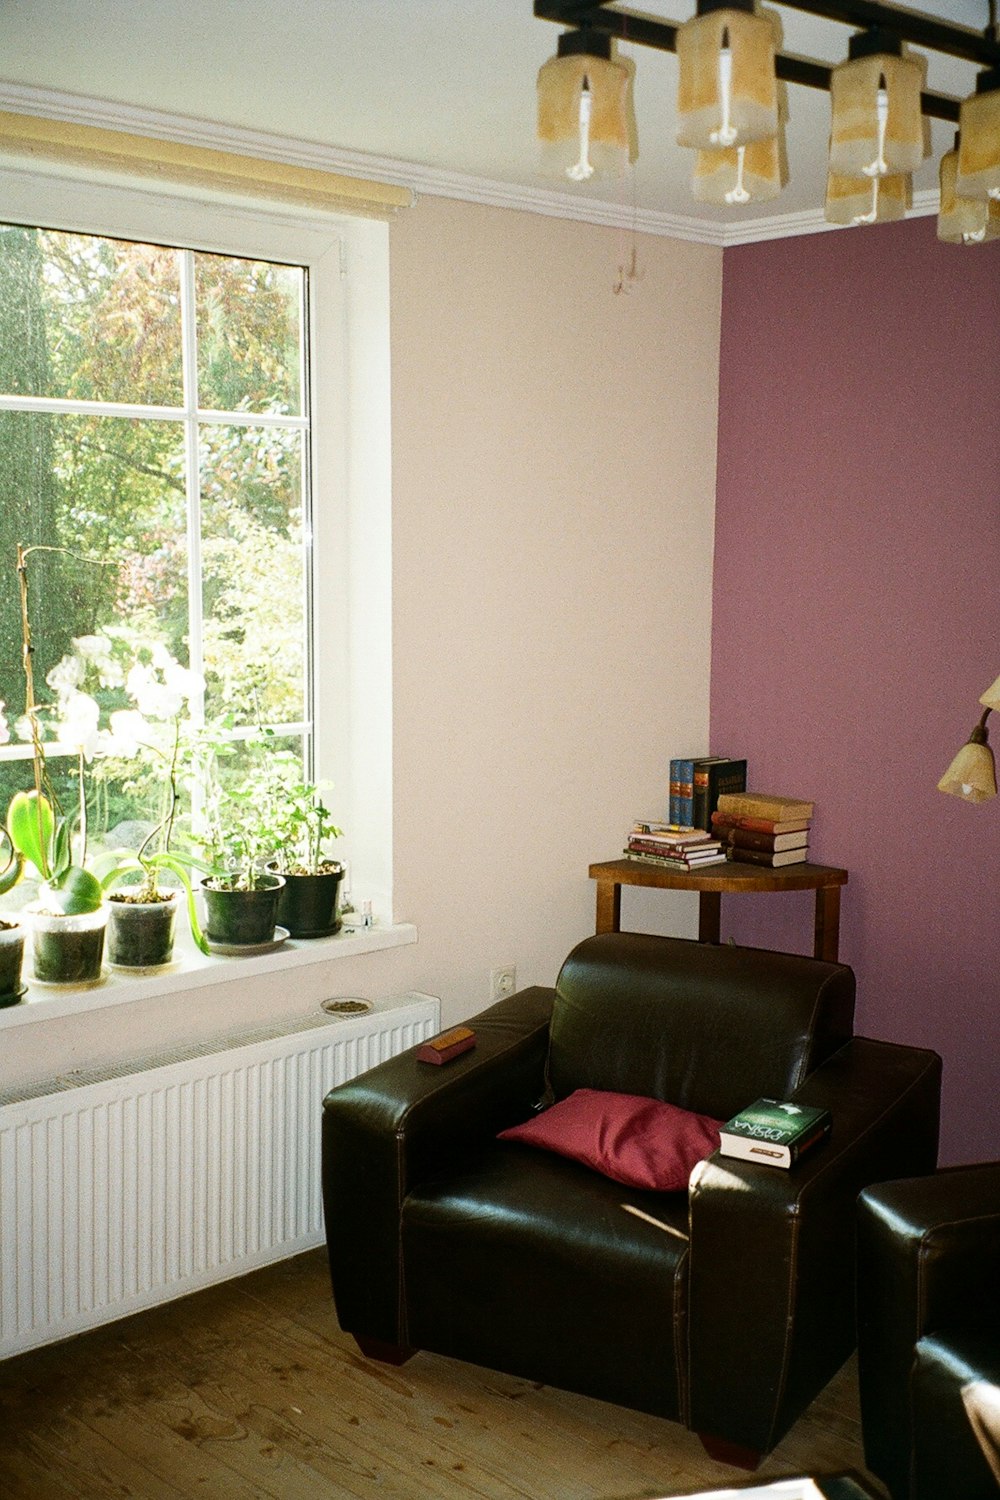 un soggiorno pieno di mobili e una grande finestra